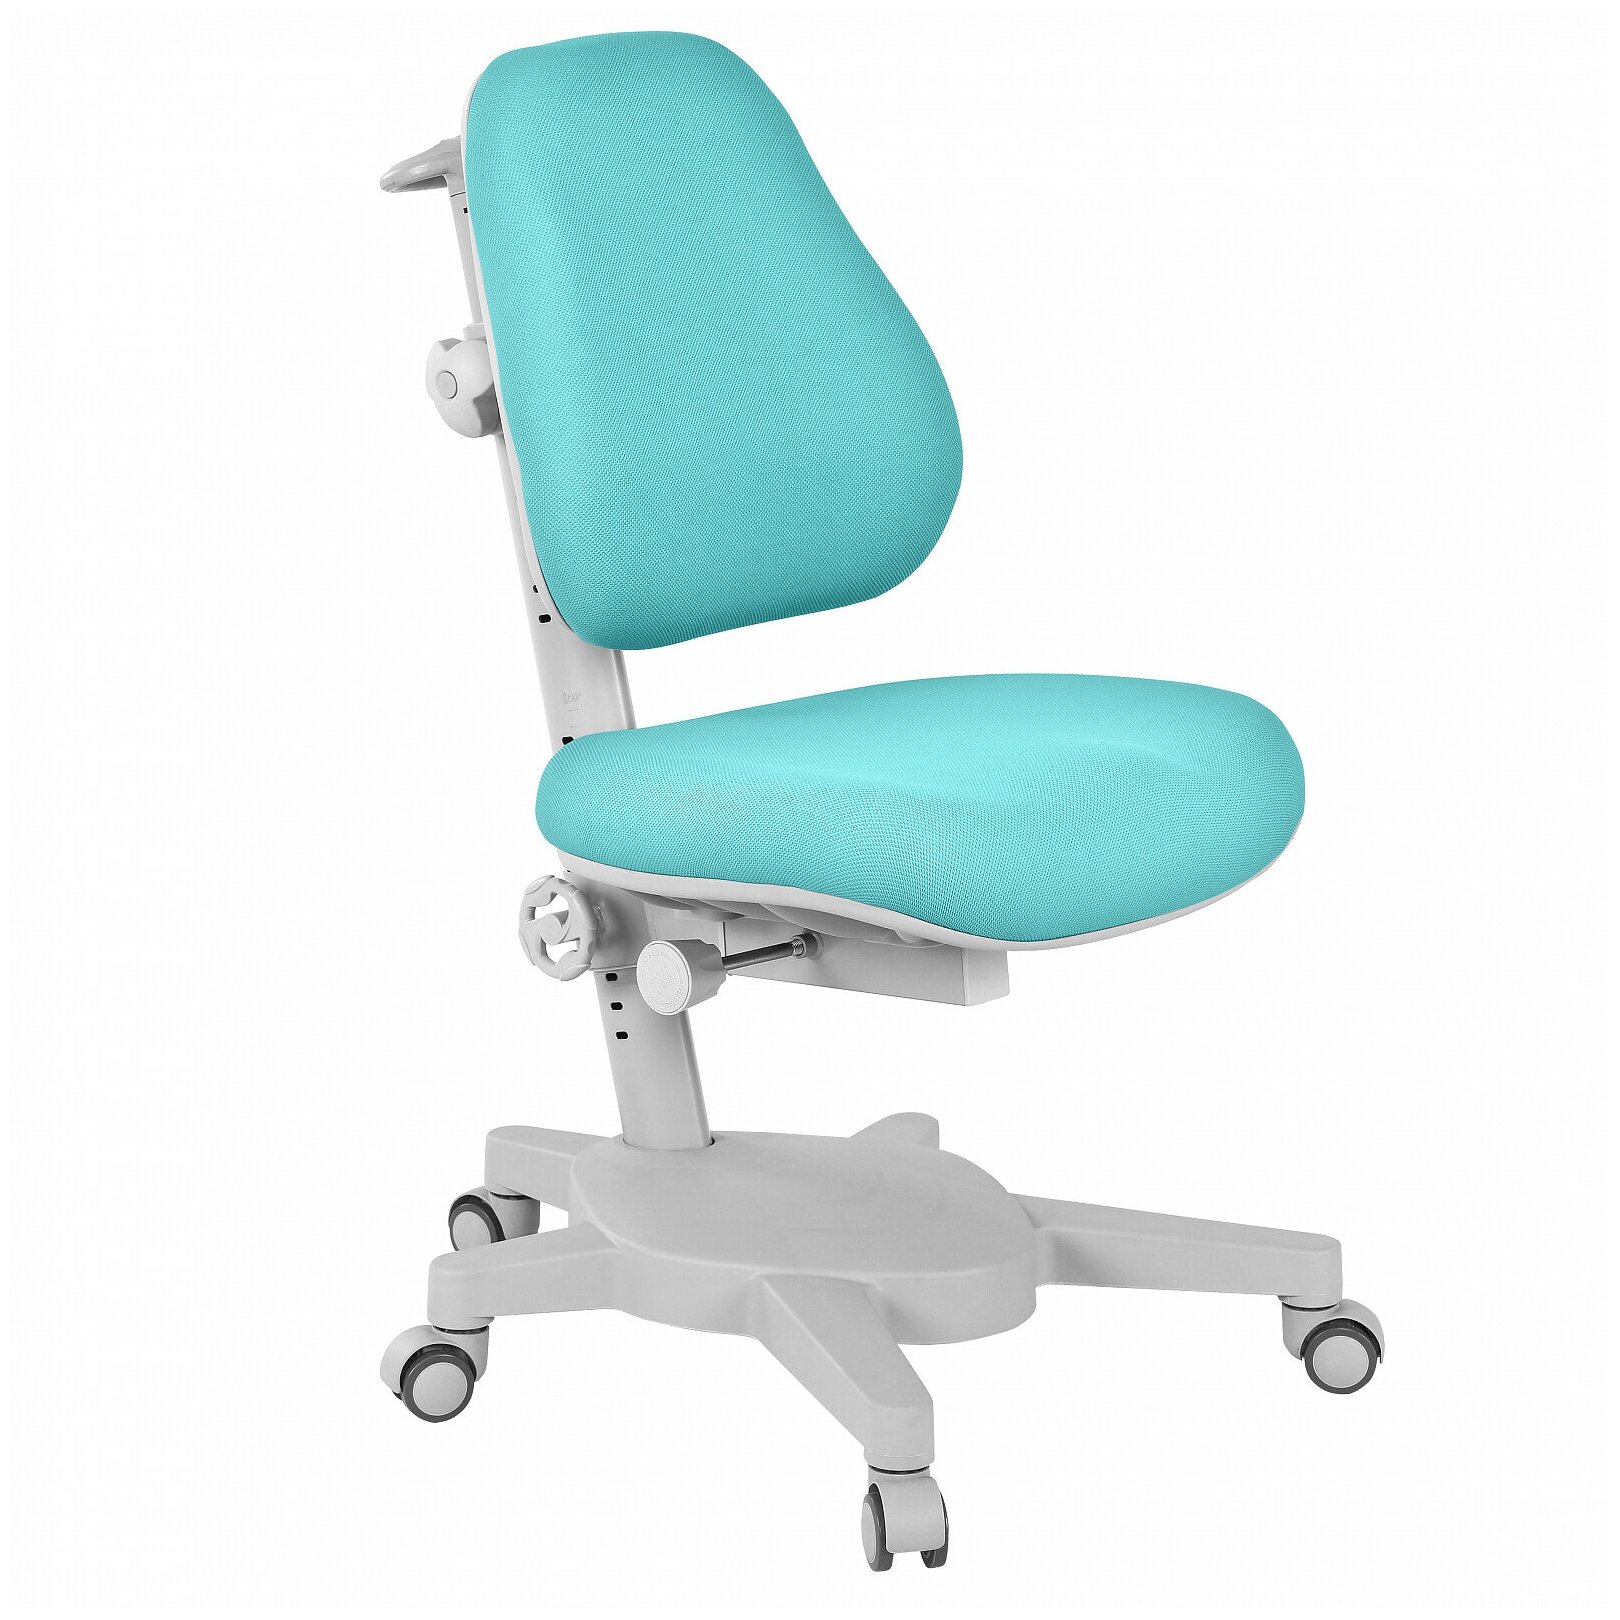 Комплект Anatomica Smart-30 парта + кресло + органайзер белый/голубой с голубым креслом Armata - фотография № 3